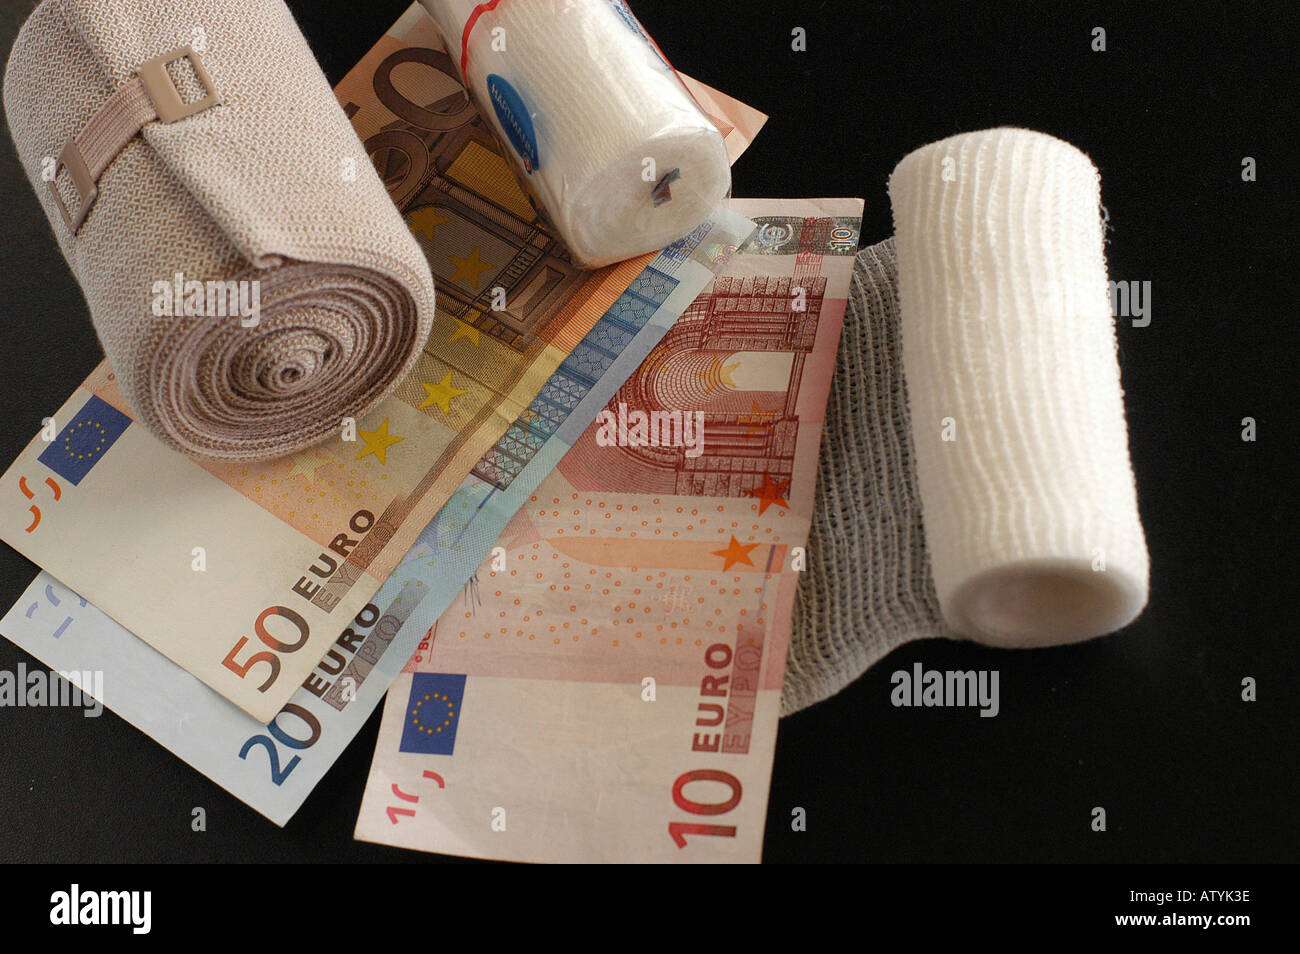 Verband Verbaende Geldscheine Euro Praxisgebuehr Kostenexplosion Gesundheit Krankheit gesund krank Krankenversicherung Stock Photo